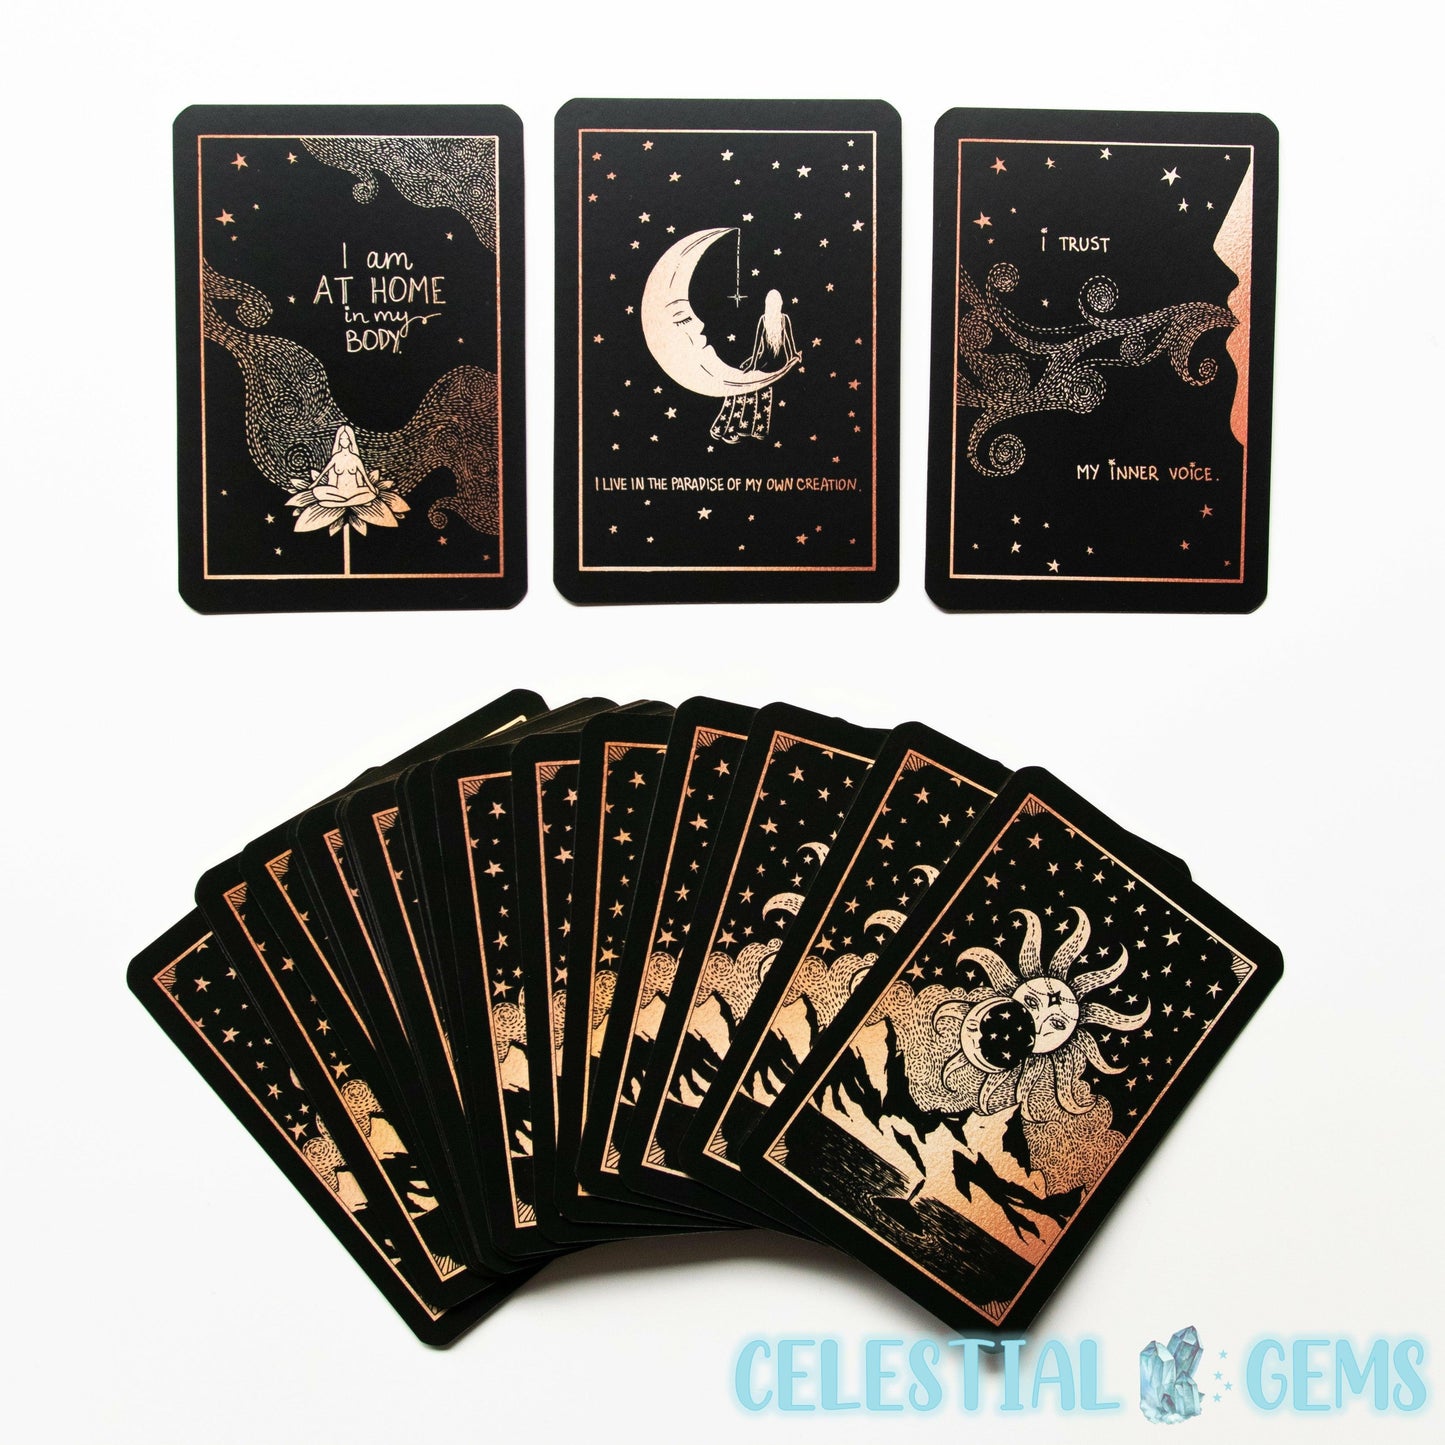 Affirmation Card Box Set (by Dreamy Moons' Annie Tarasova)